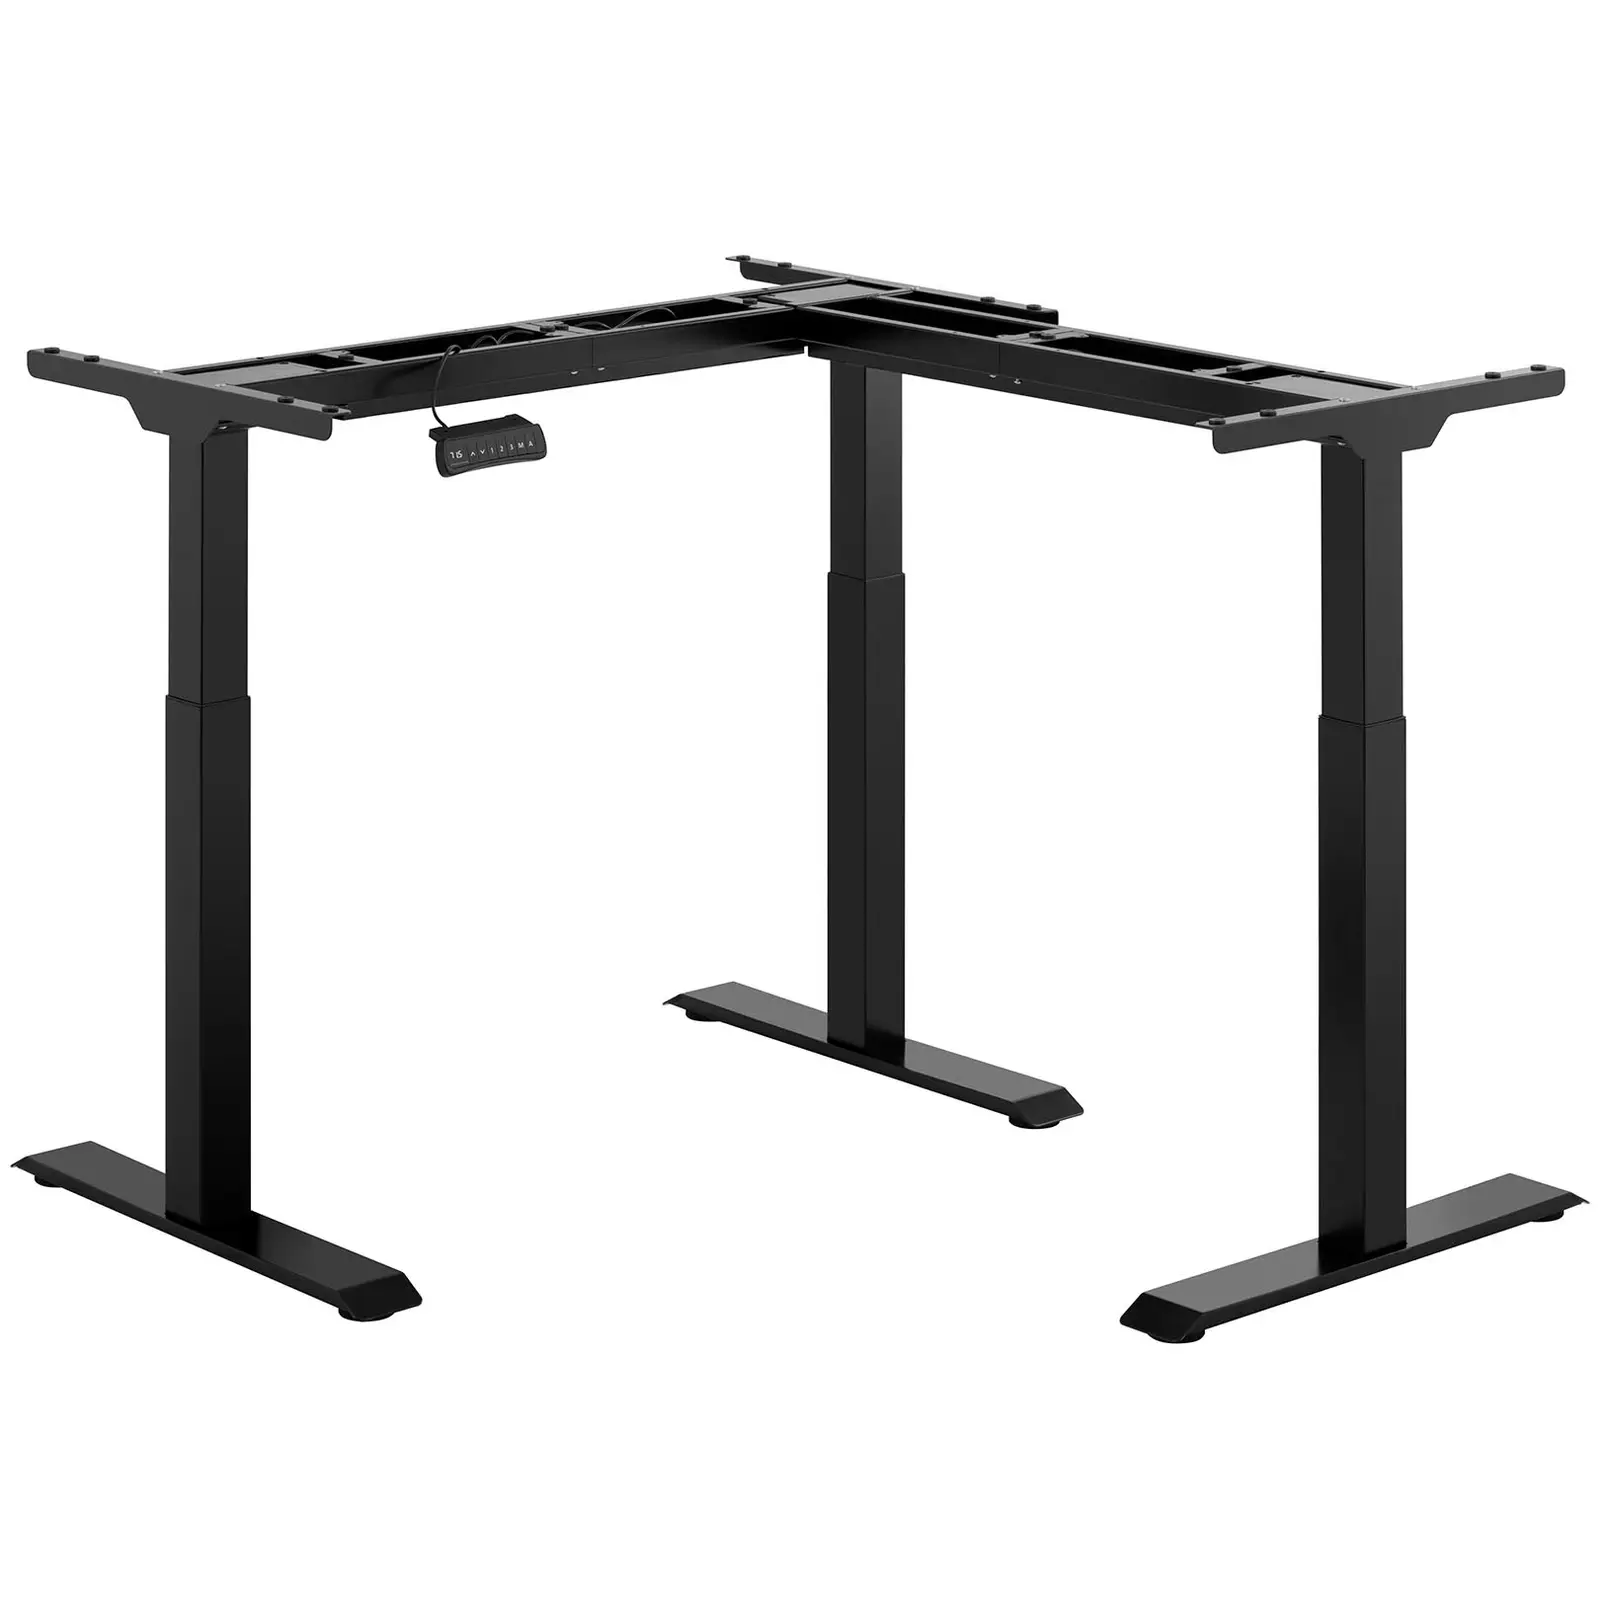 Adjustable Corner Desk Frame - Height: 69-118 cm - Width: 90-150 cm (left) / 110-190 cm (right) - Angle: 90 ° - 150 kg